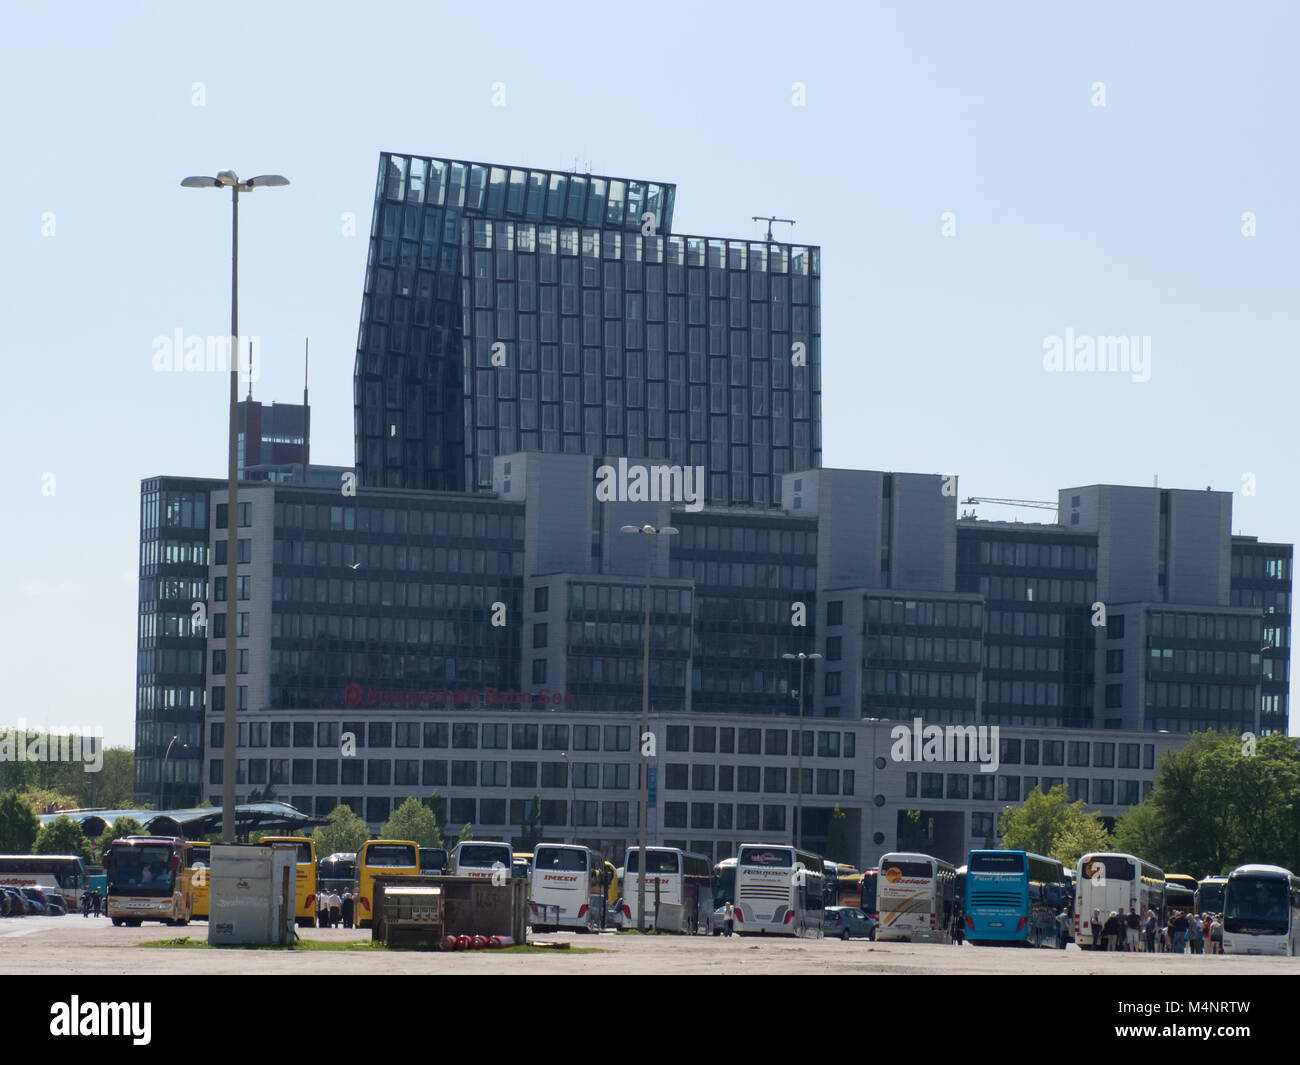 Hambourg, Allemagne - 07 mai 2016 : Lors de l'anniversaire du port de Hambourg il y a beaucoup d'entraîneurs parking sur la Heiligengeistfeld. Banque D'Images